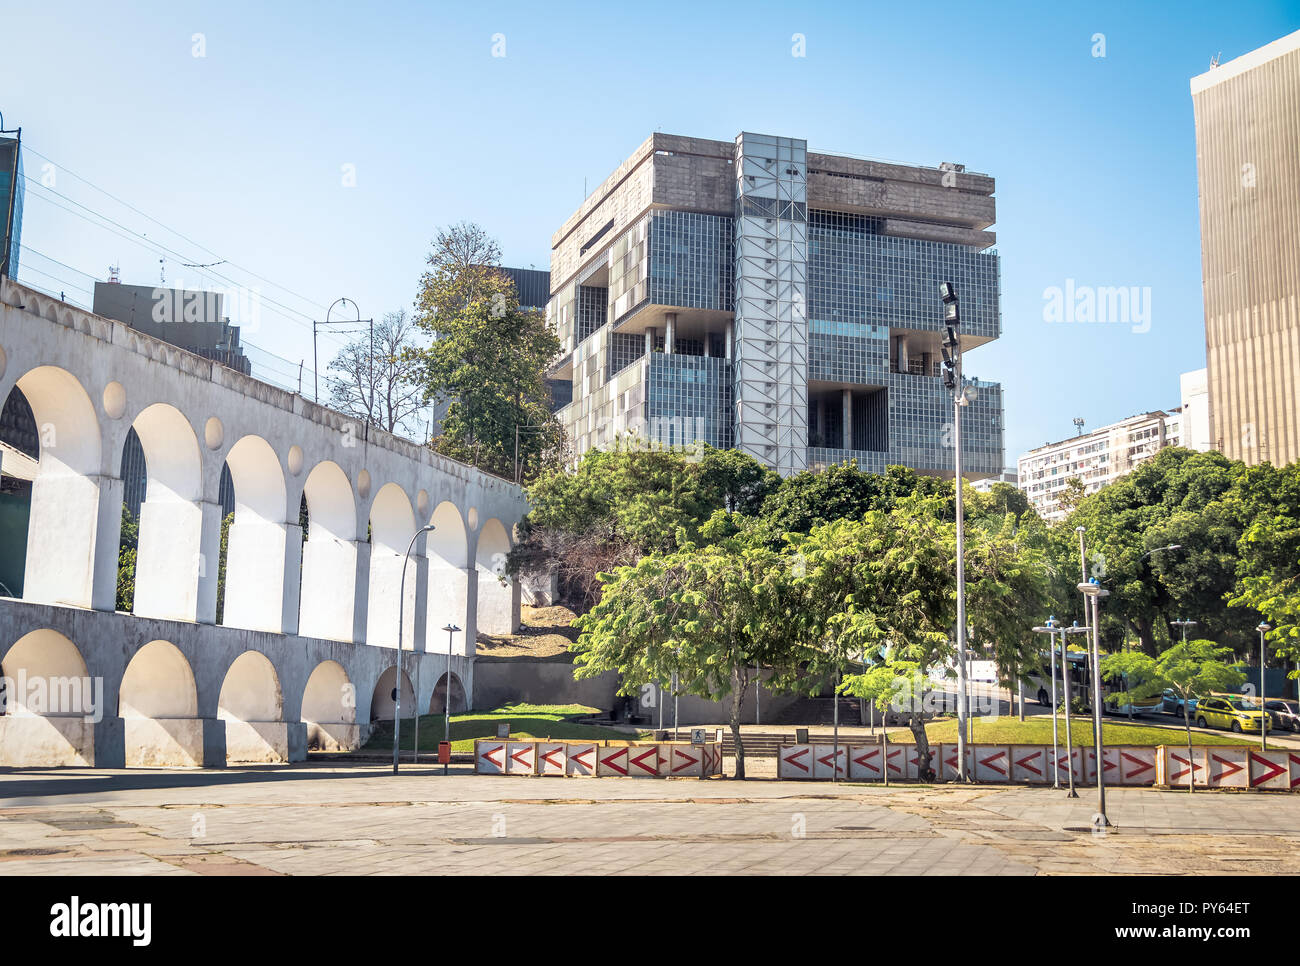 Petrobras Oil Company Headquarters Building and Arcos da Lapa Arches - Rio de Janeiro, Brazil Stock Photo